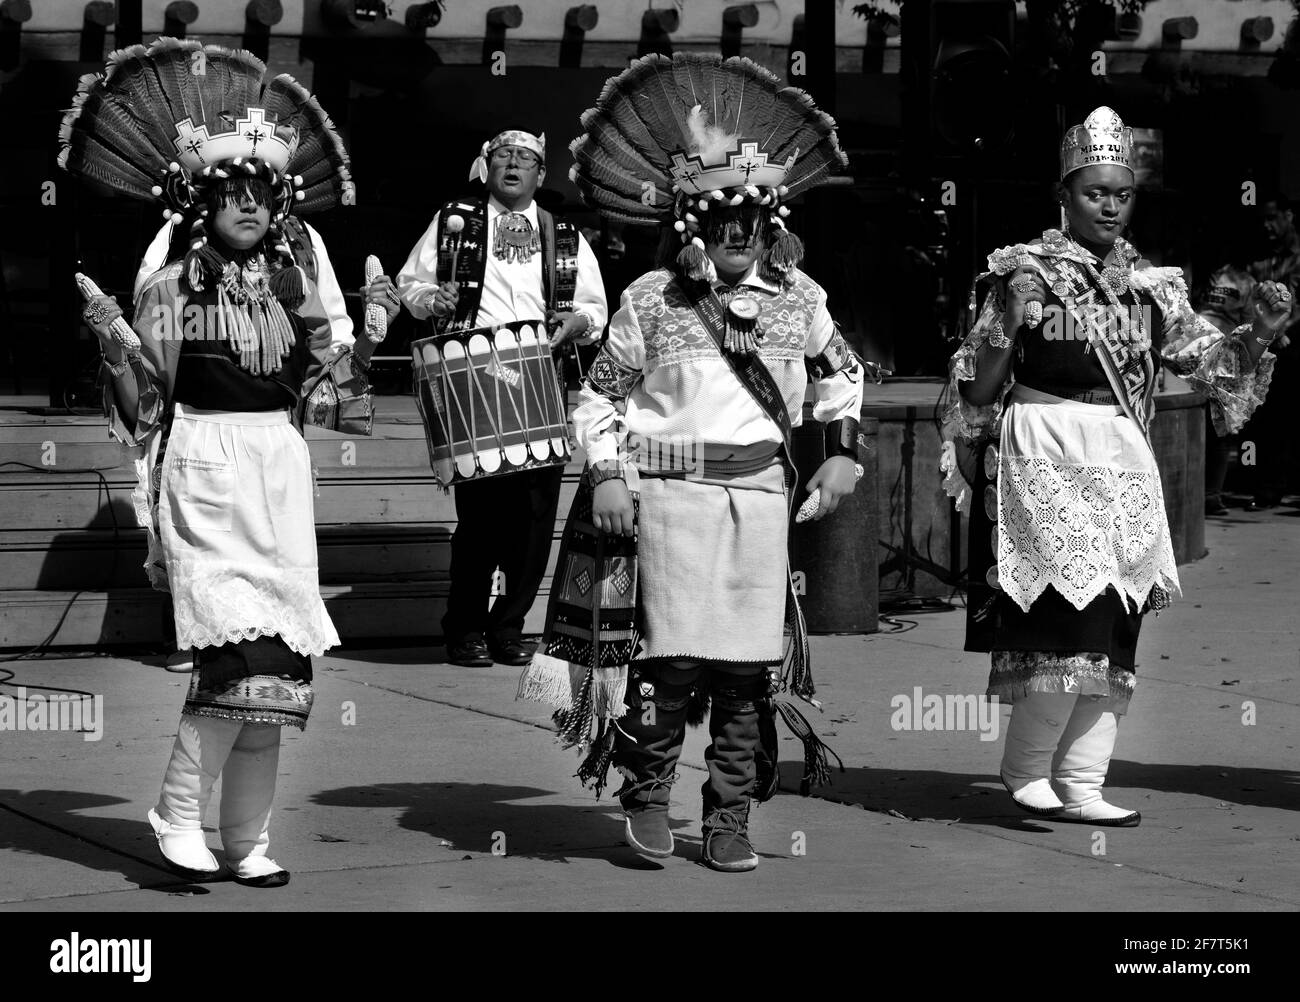 Mitglieder des Zuni Pueblo in New Mexico führen einen traditionellen indianischen Tanz während der Zeremonie zum Tag der indigenen Völker in Santa Fe, New Mexico, auf. Stockfoto